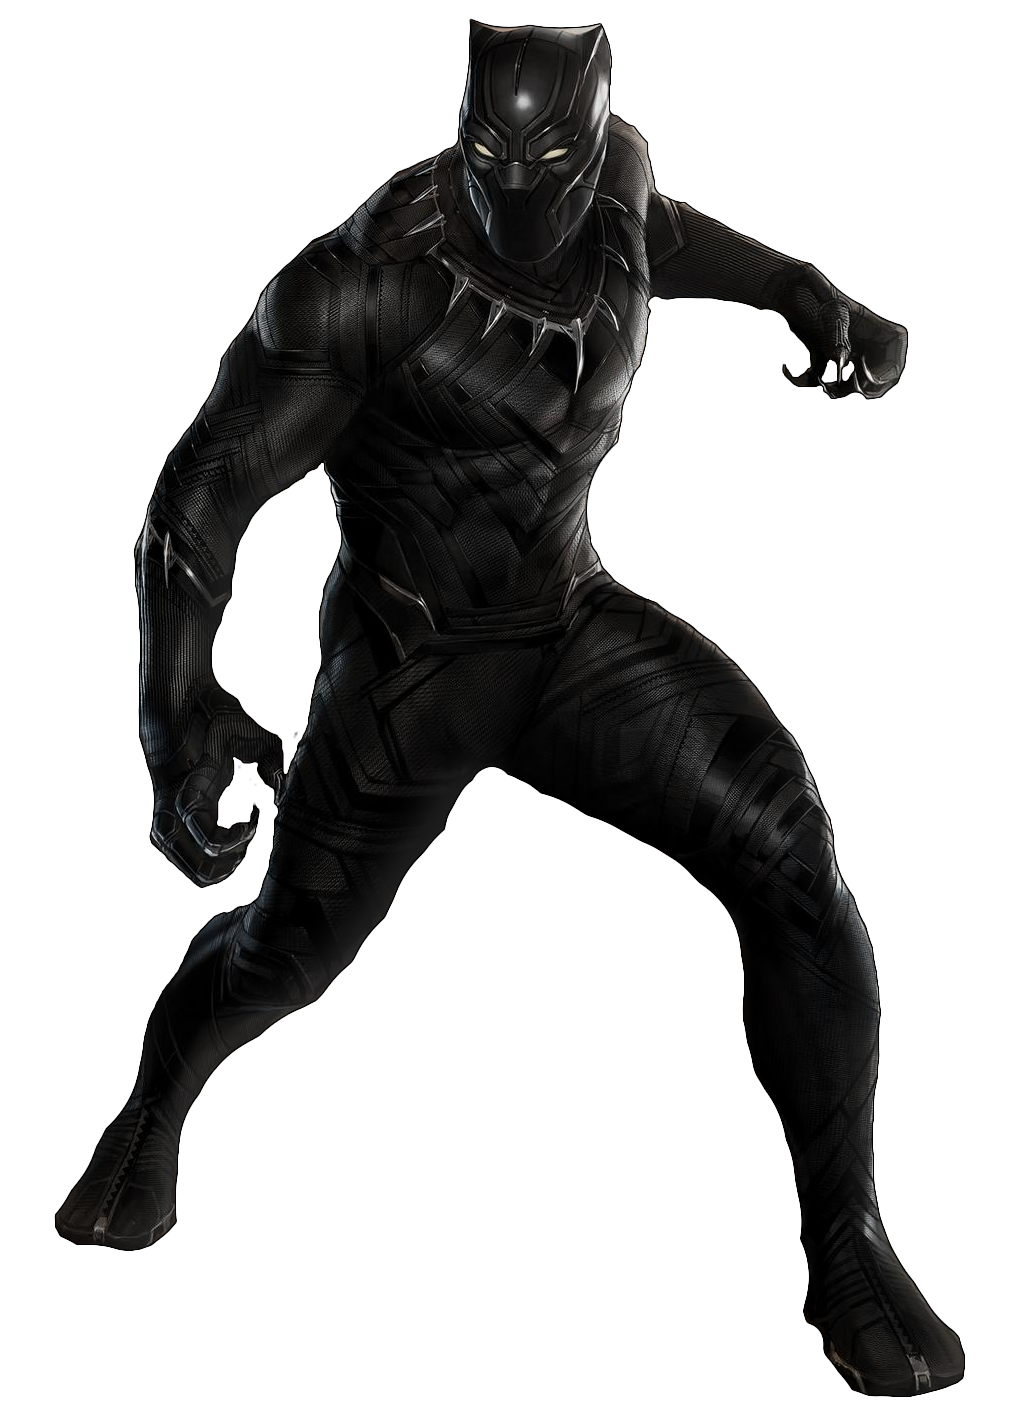 Black Panther Png Black Panther - black panther claws roblox wikia fandom powered by wikia